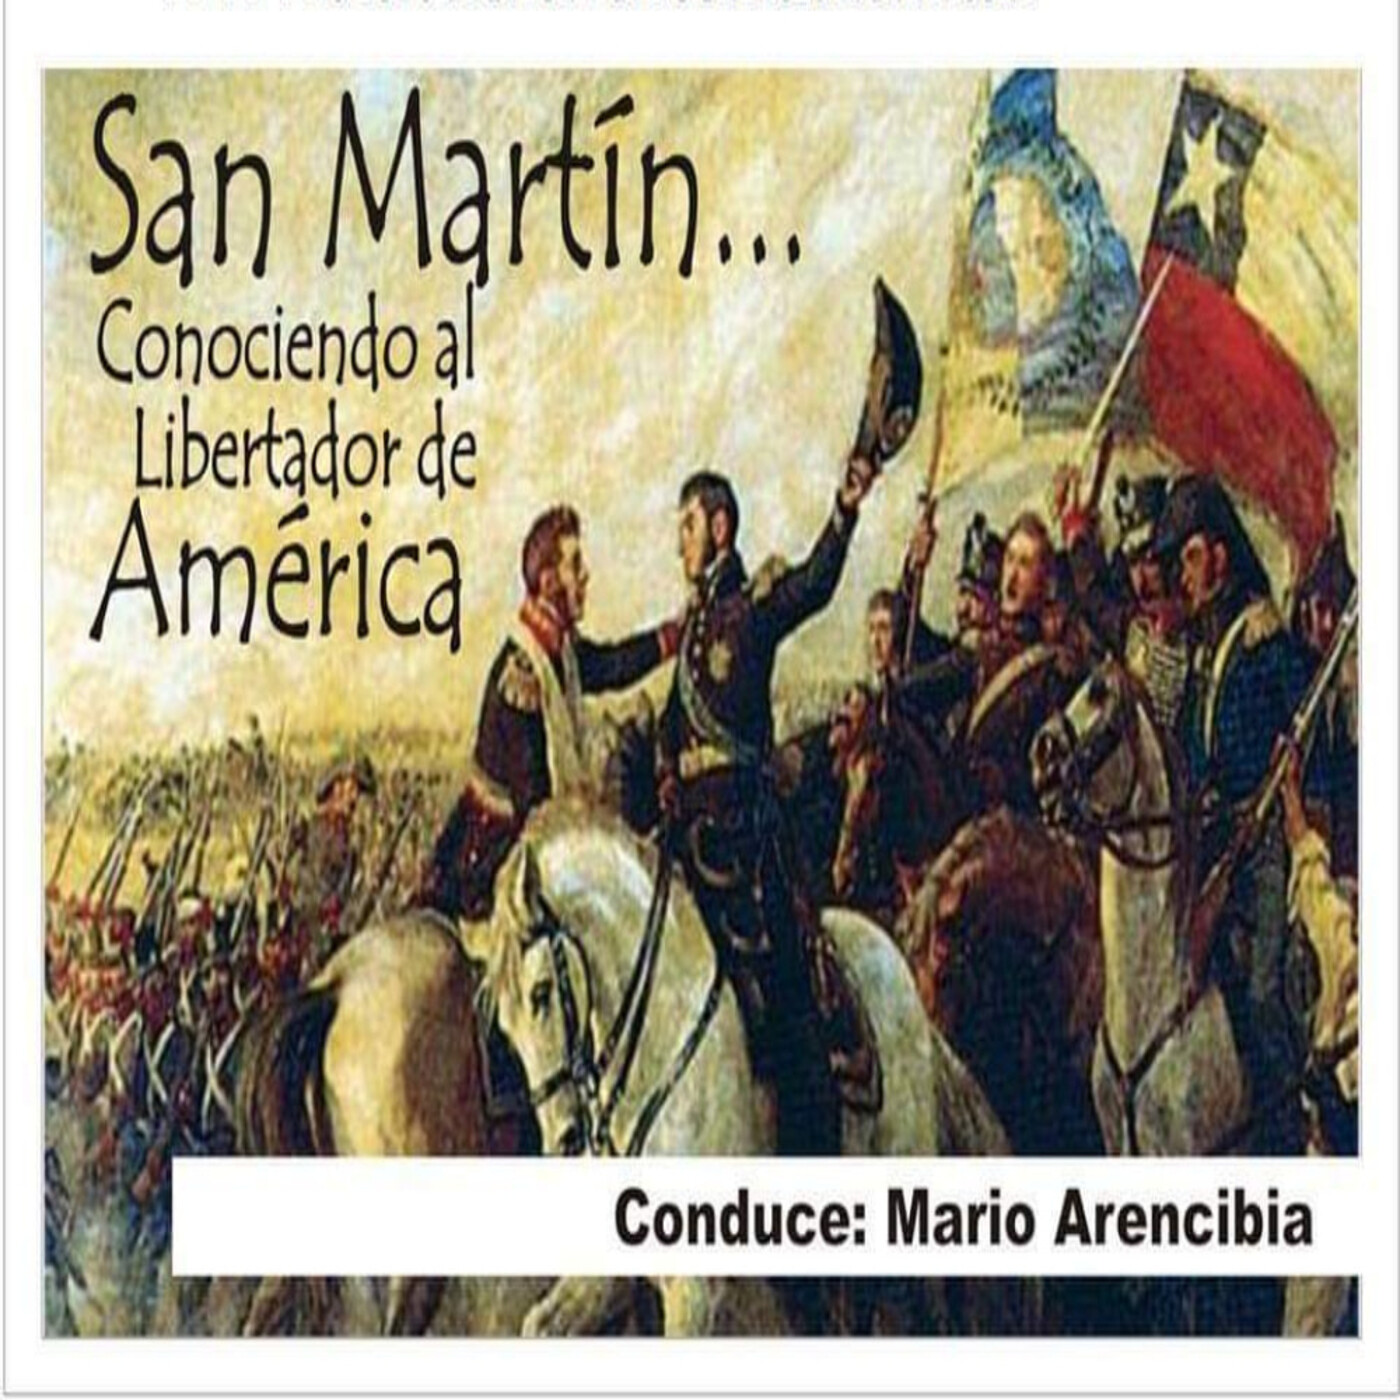 10/06/2023 San Martín (Conociendo al Libertador de America)